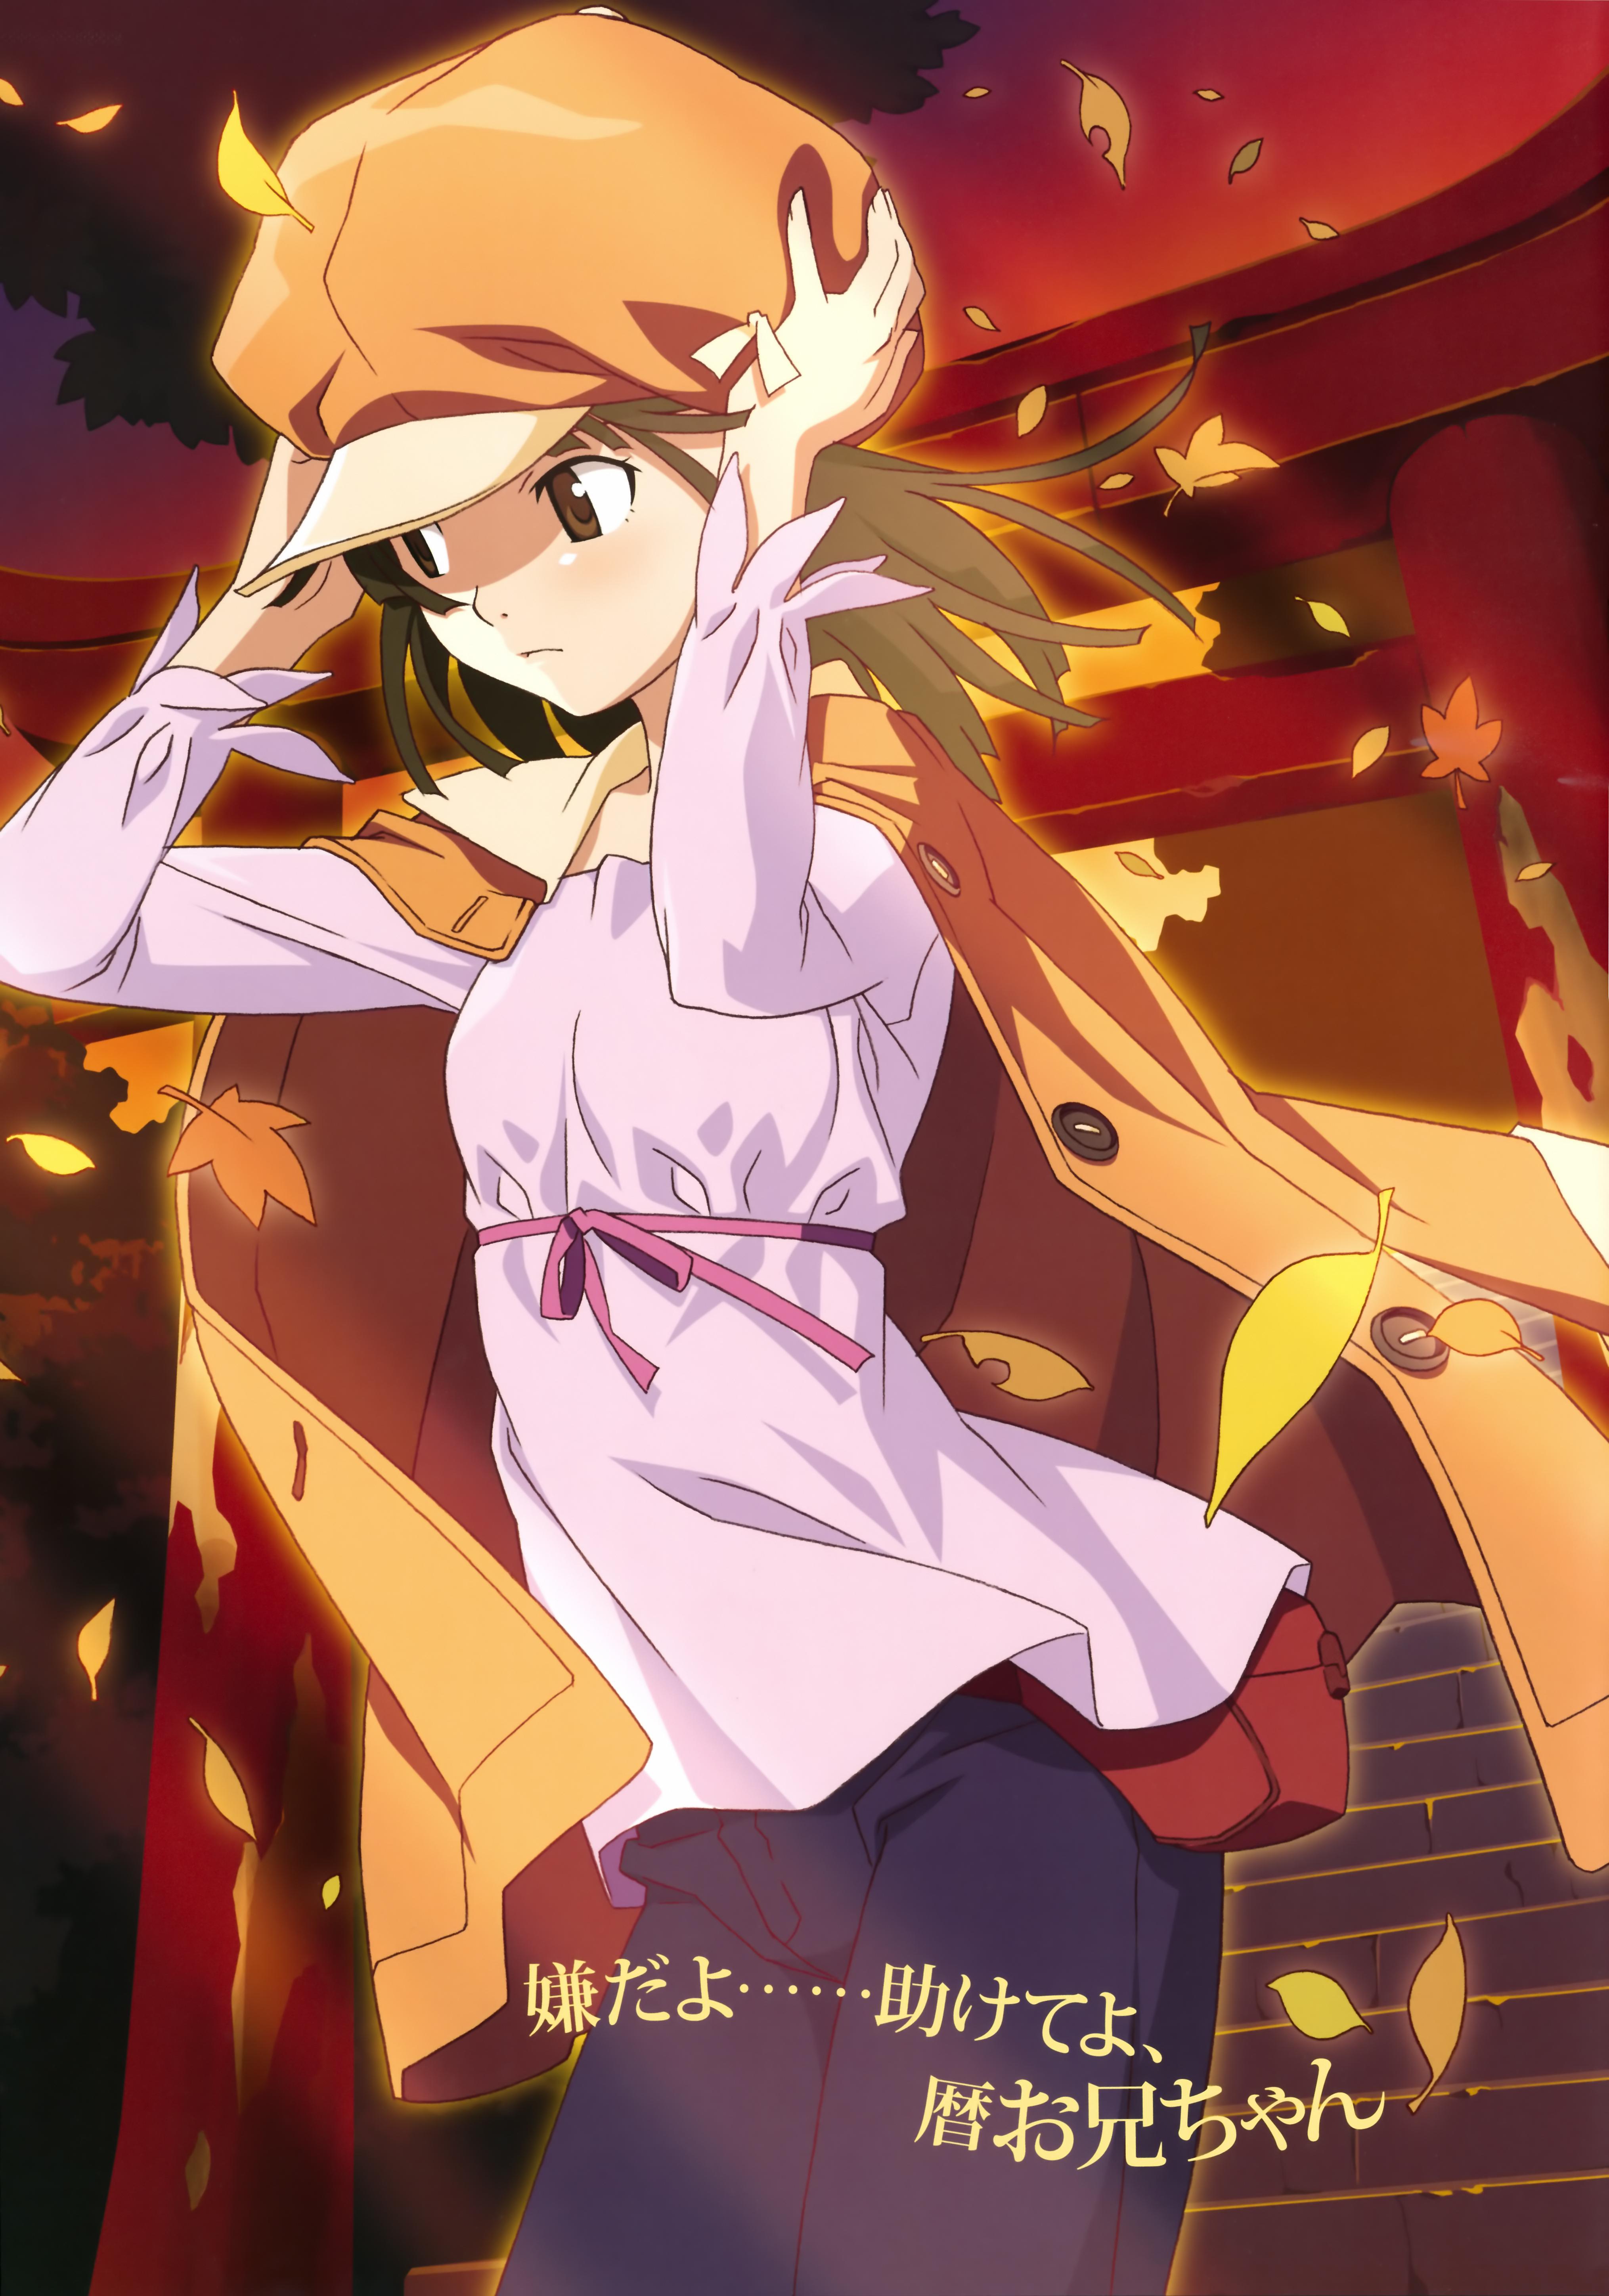 Sengoku Nadeko Anime Image Board